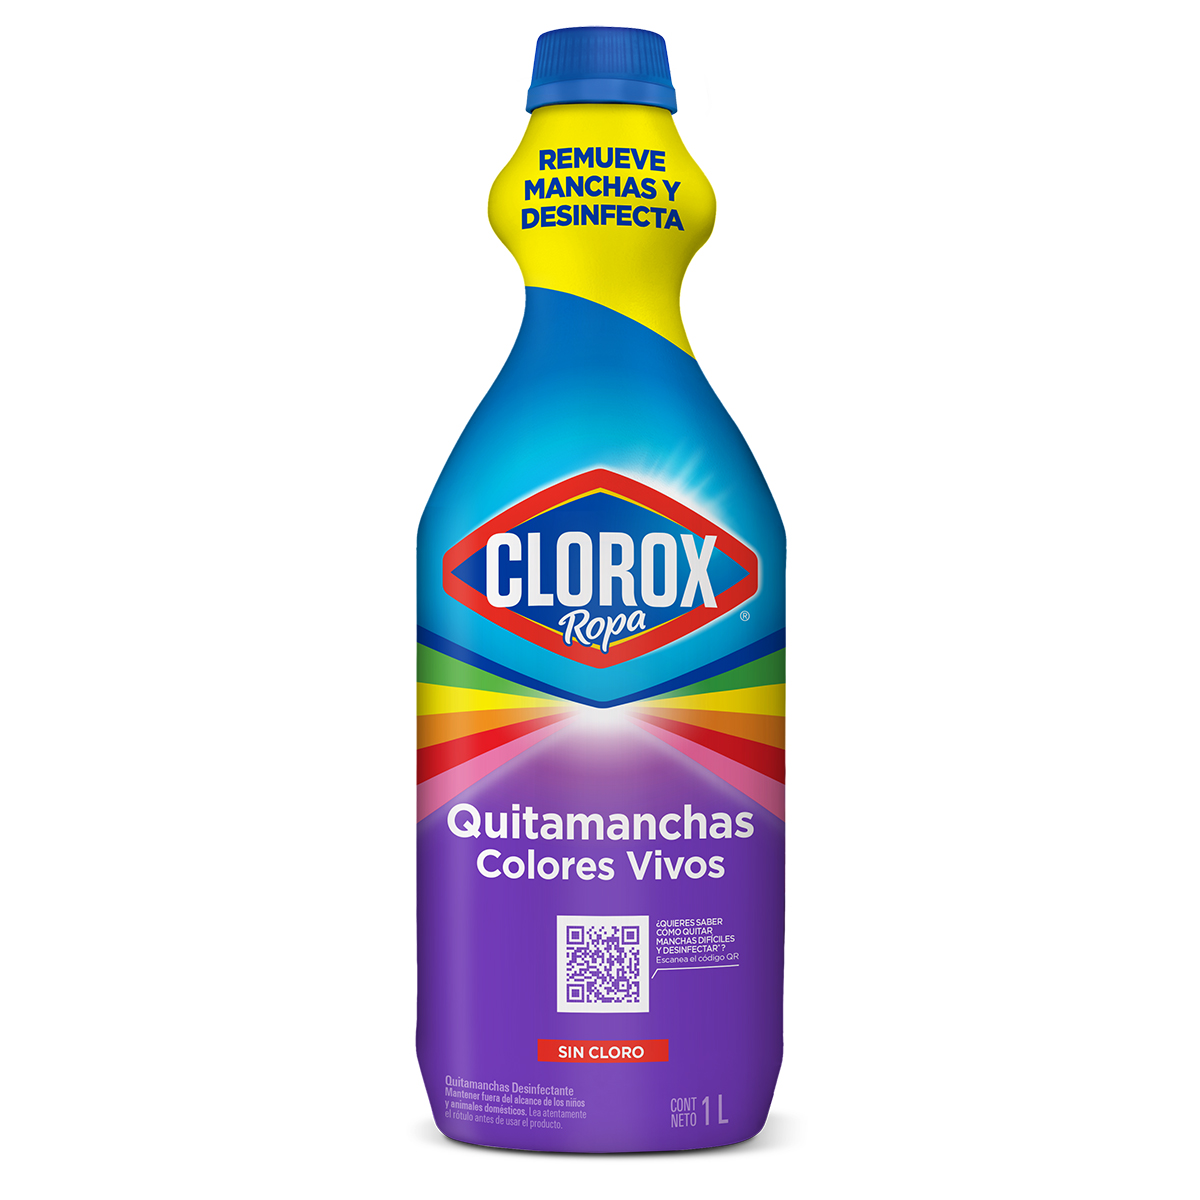 Quitamanchas Líquido Clorox Ropa - Colores Vivos 1l - 896387